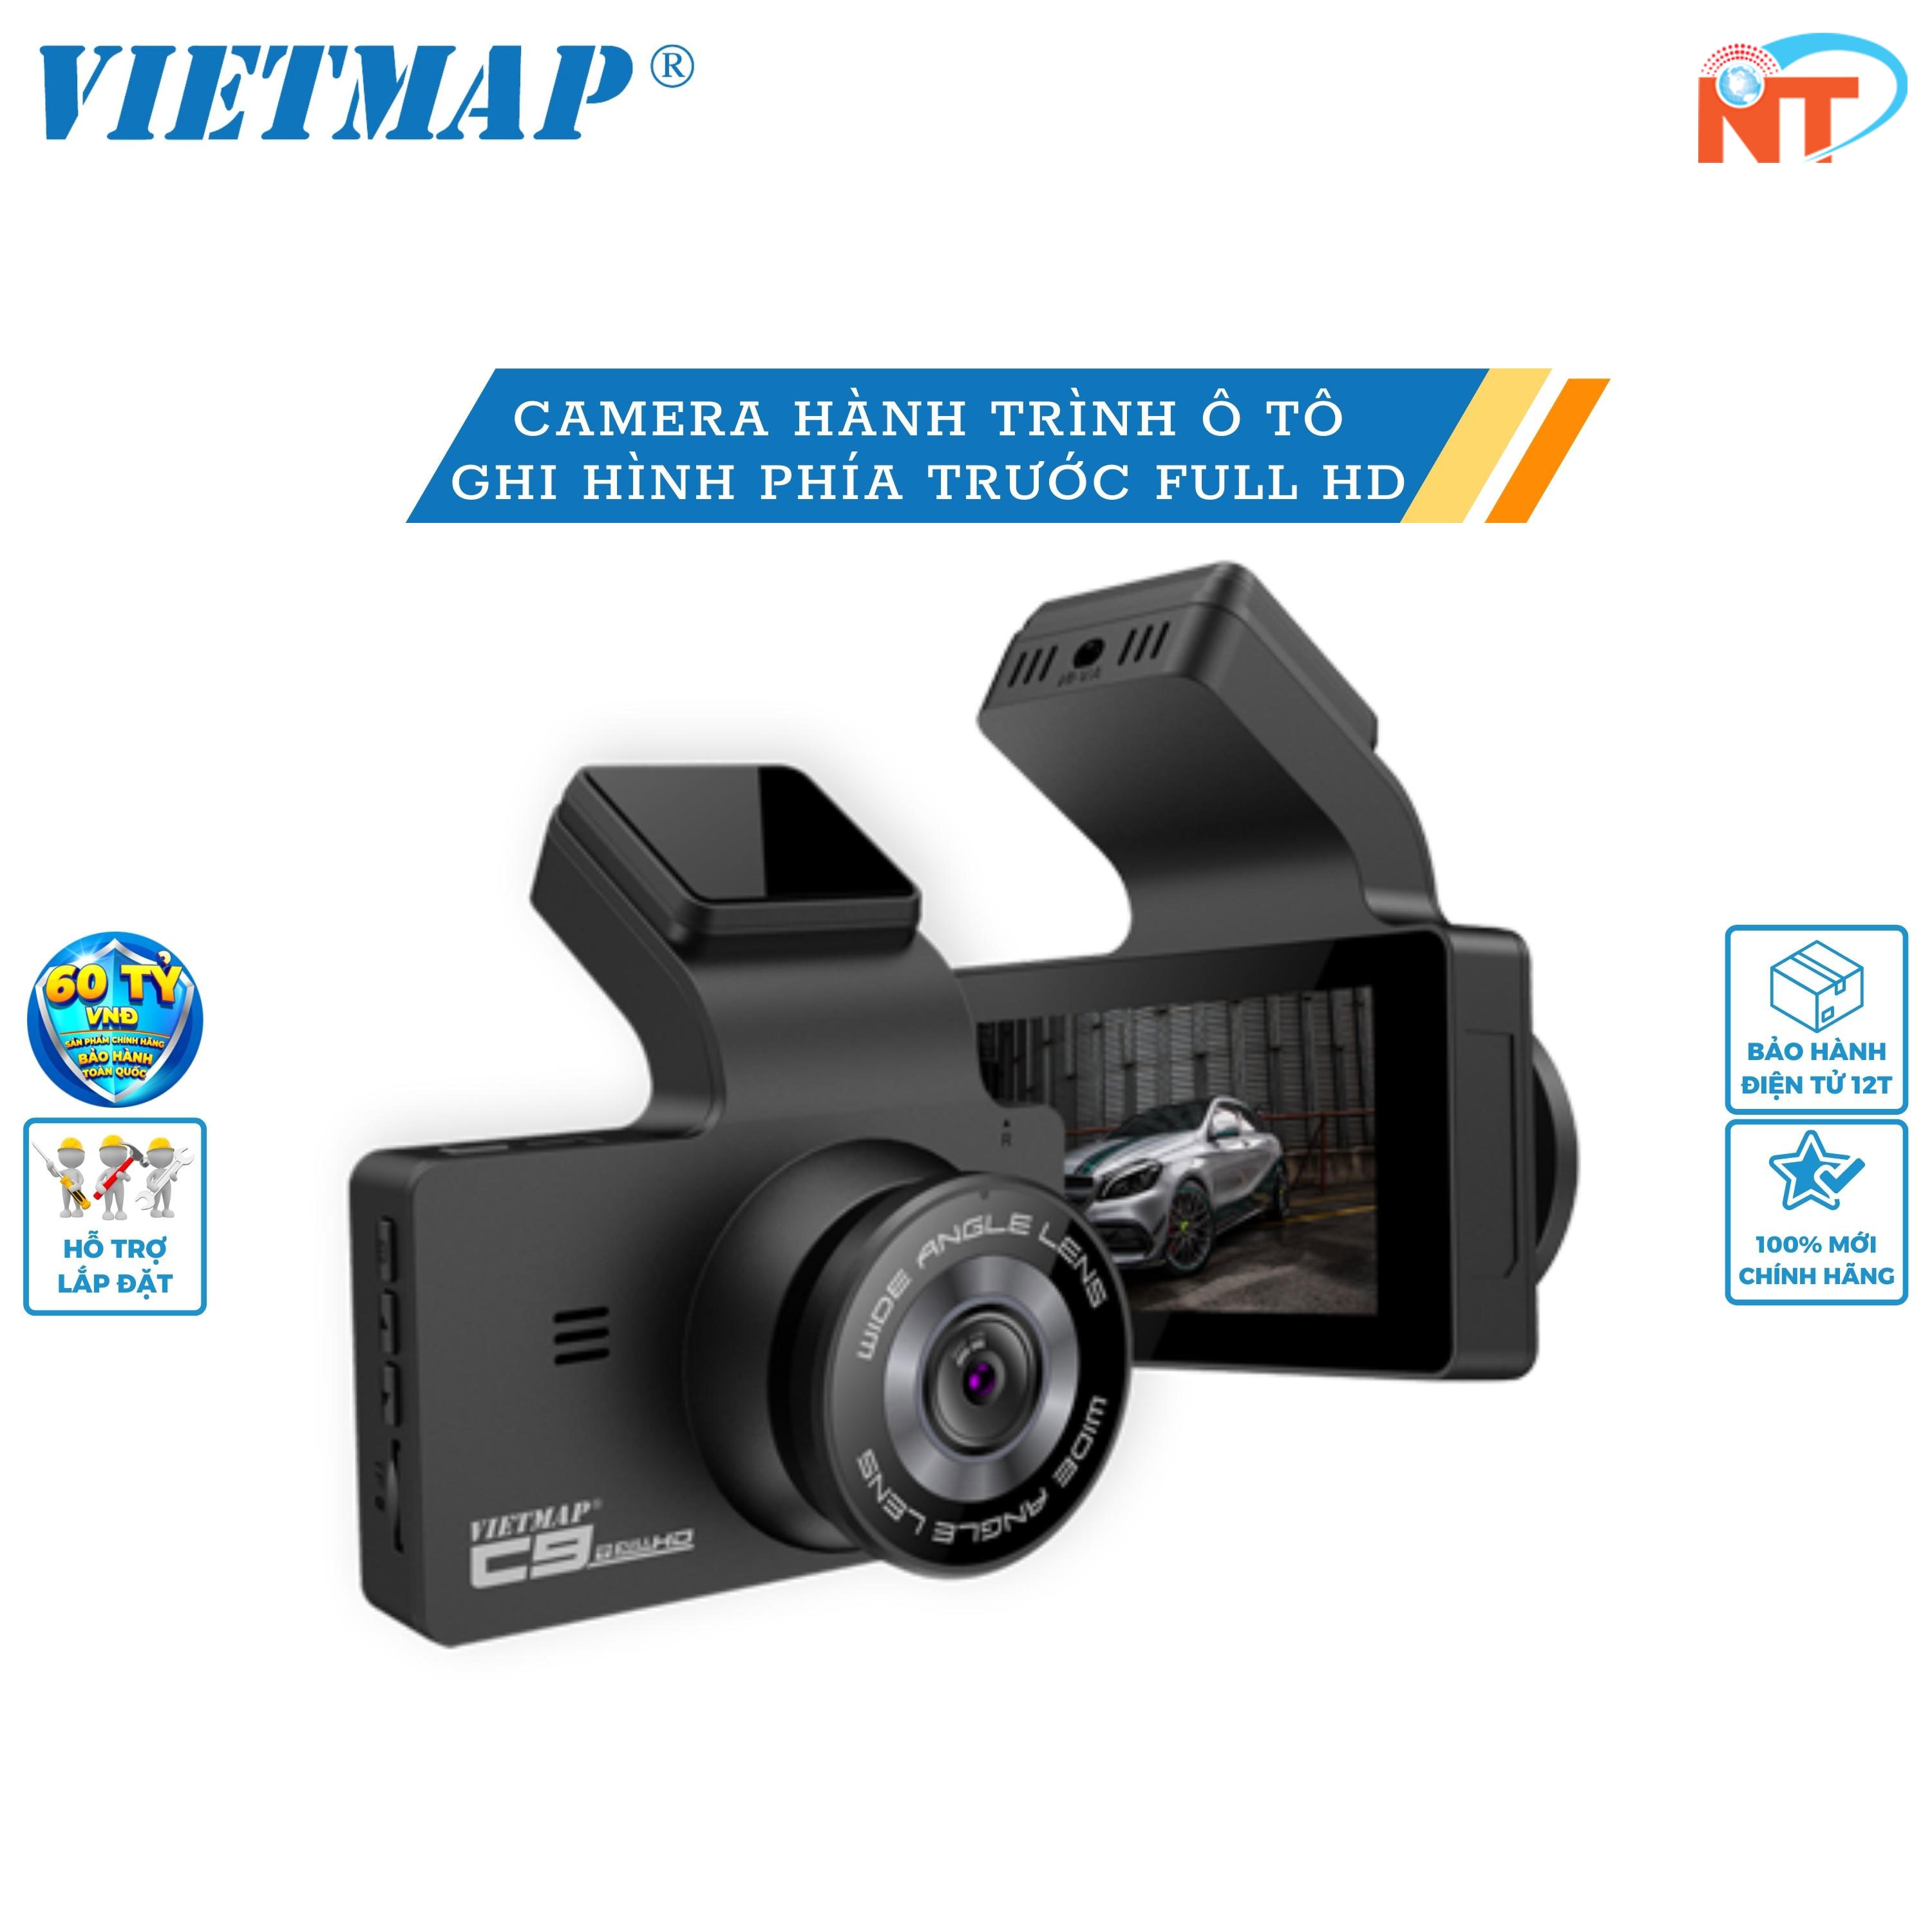 VIETMAP C9 - Camera hành trình Ô tô Full HD góc rộng 170° - Hàng chính hãng